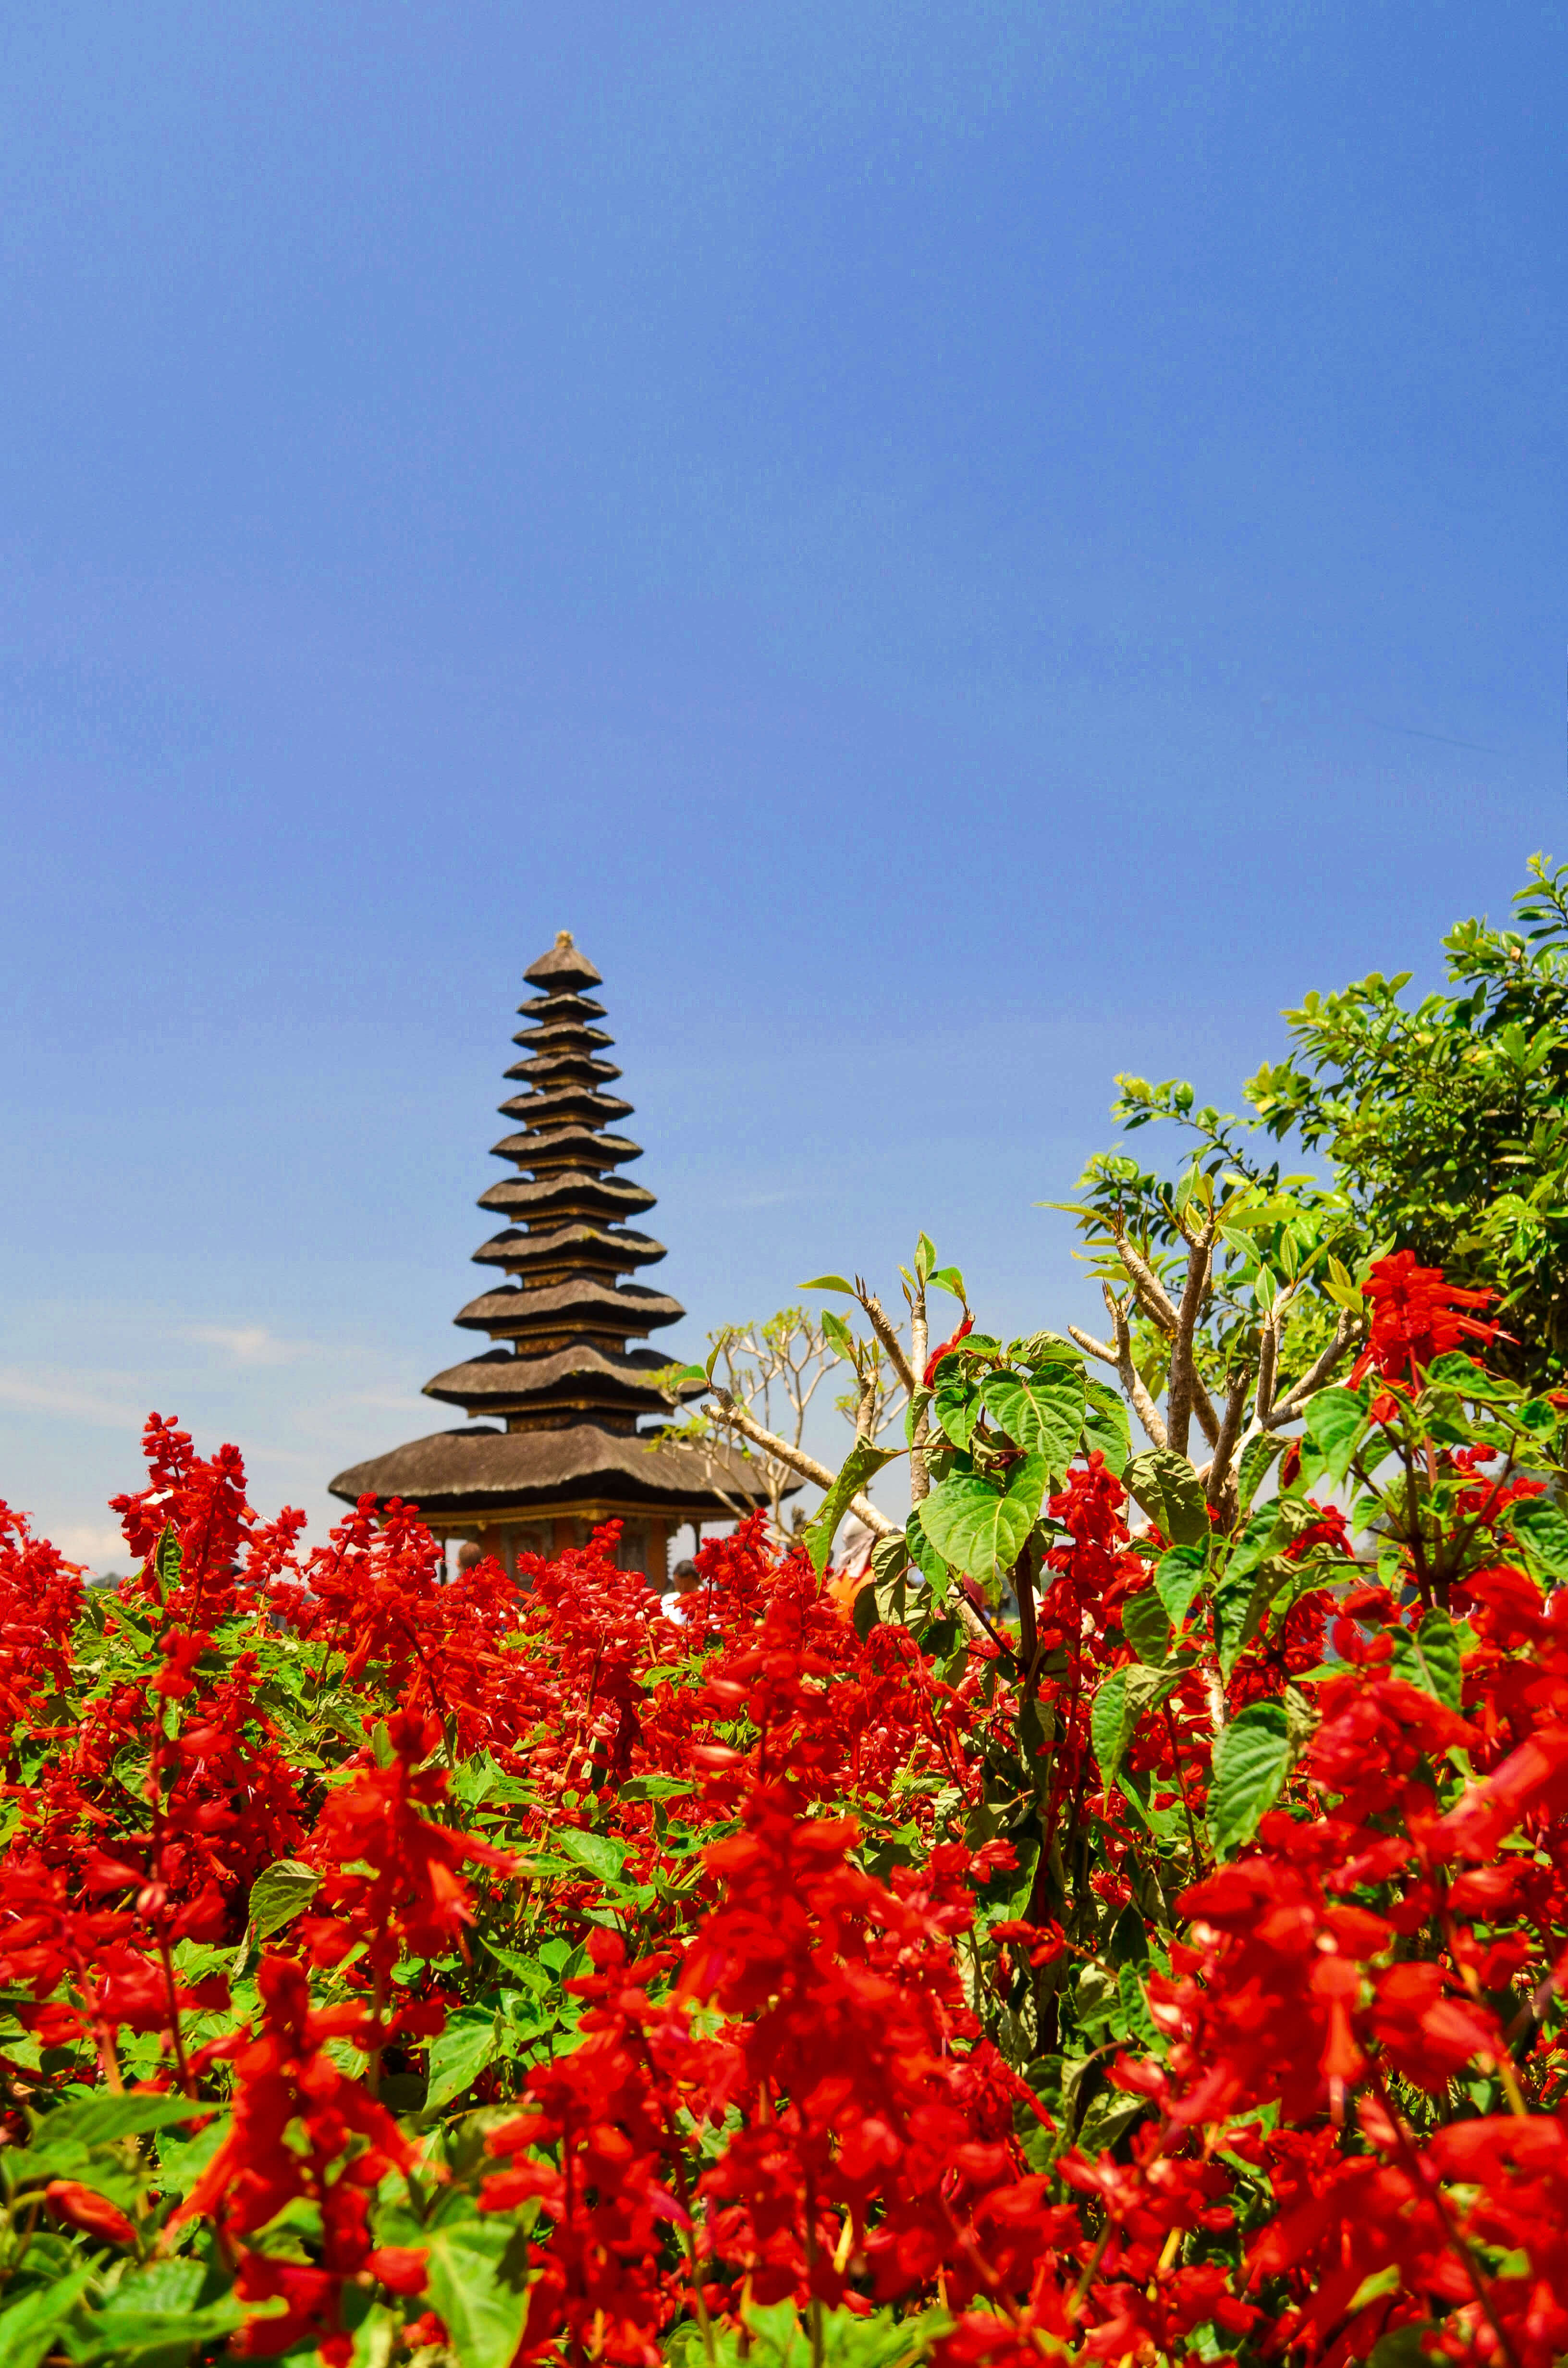 Bali Golden Tour - Ulun Danu Beratan temple in Northern Bali, Indonesia